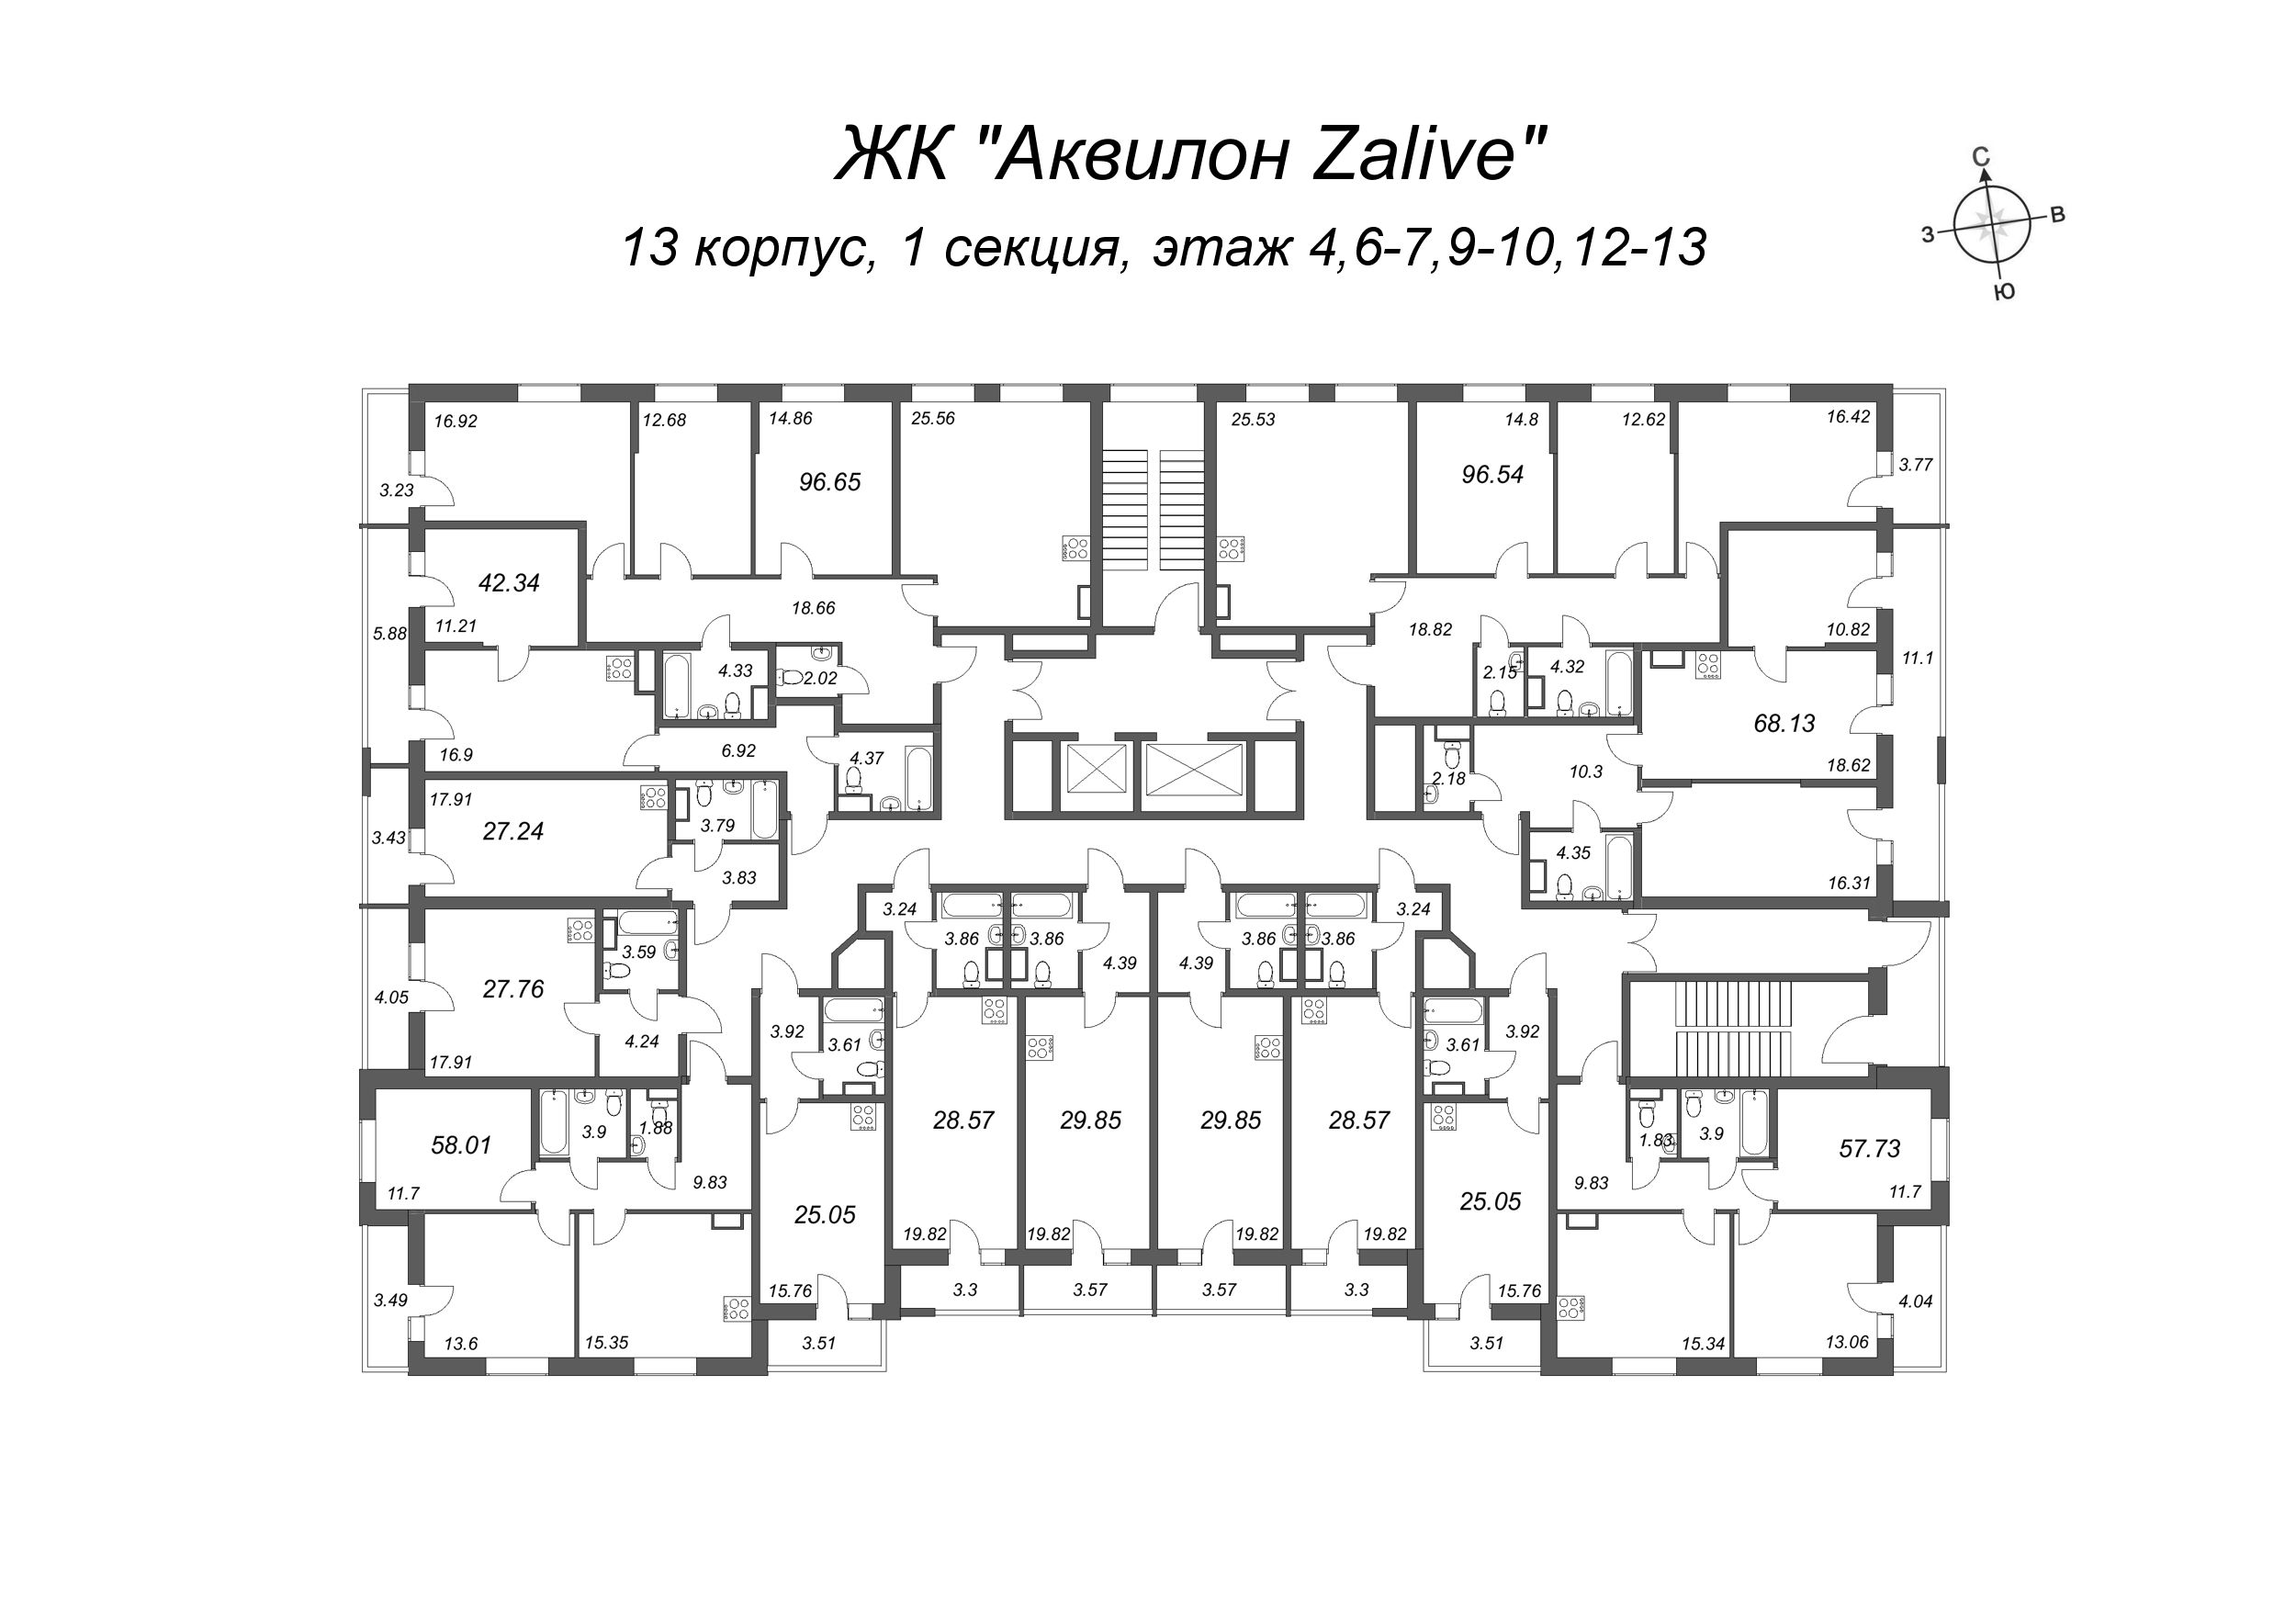 4-комнатная (Евро) квартира, 95 м² в ЖК "Аквилон Zalive" - планировка этажа